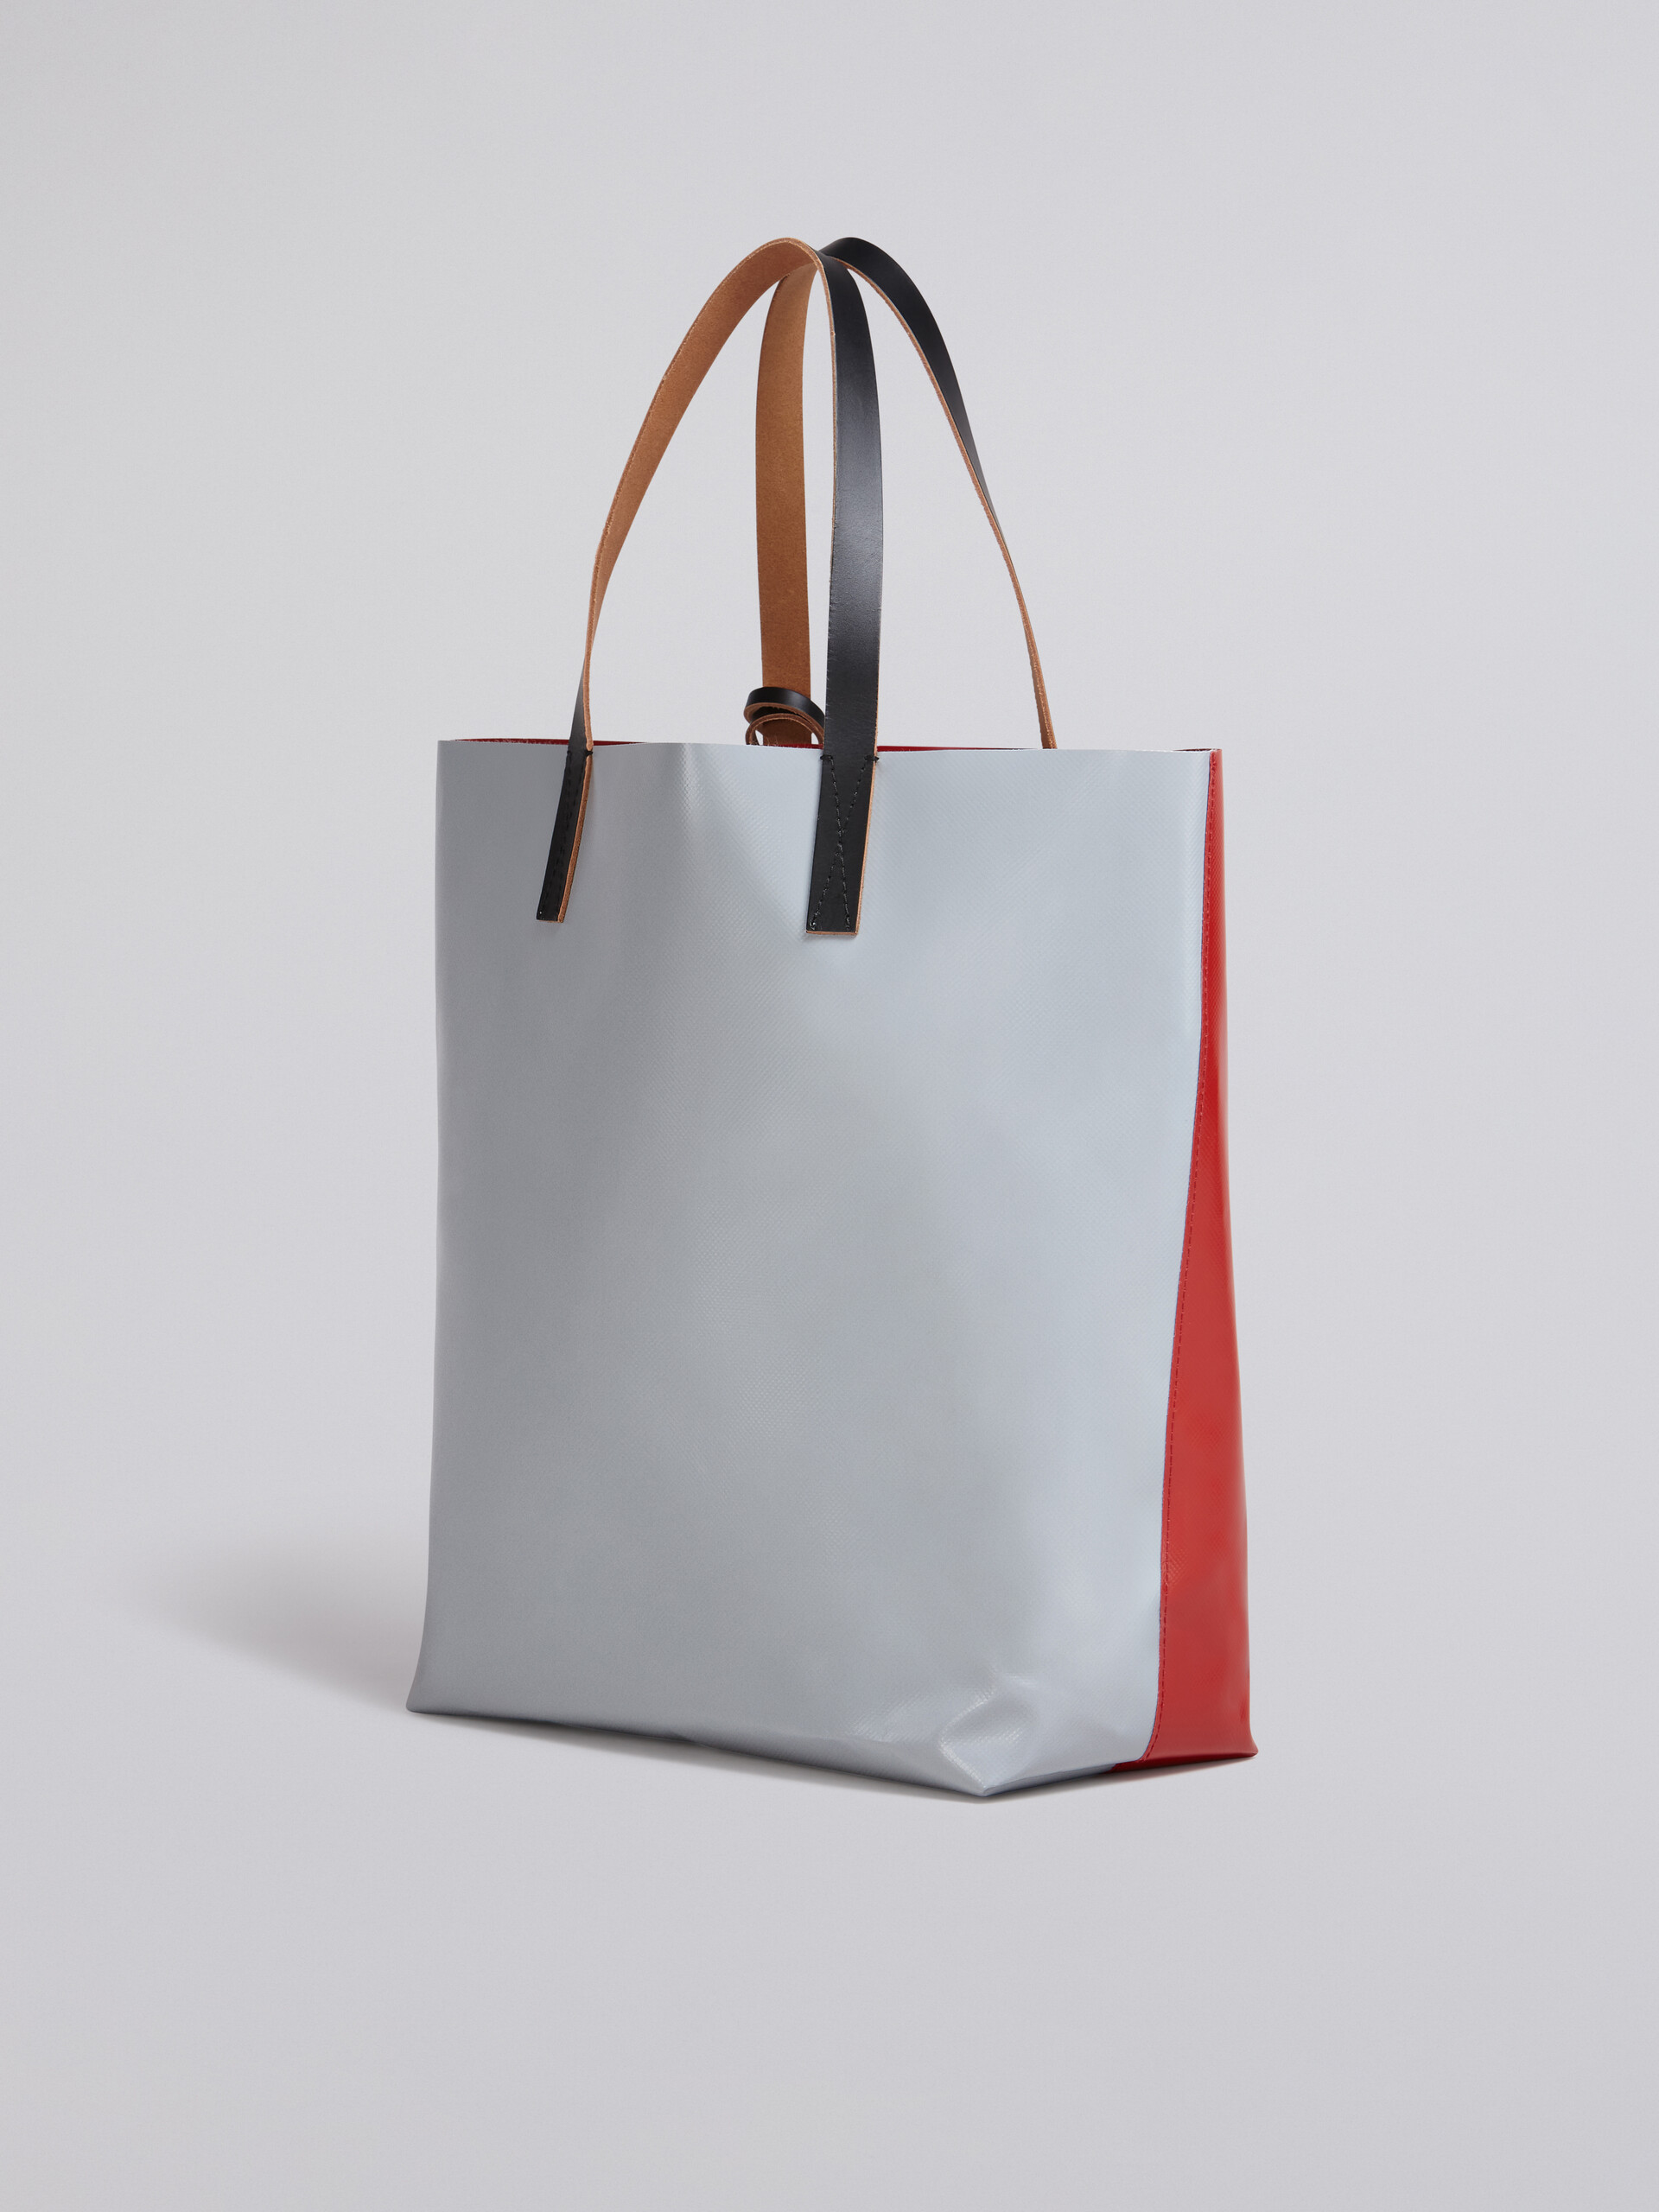 Borsa shopping in PVC rosso e grigio con manici in pelle - Borse shopping - Image 2